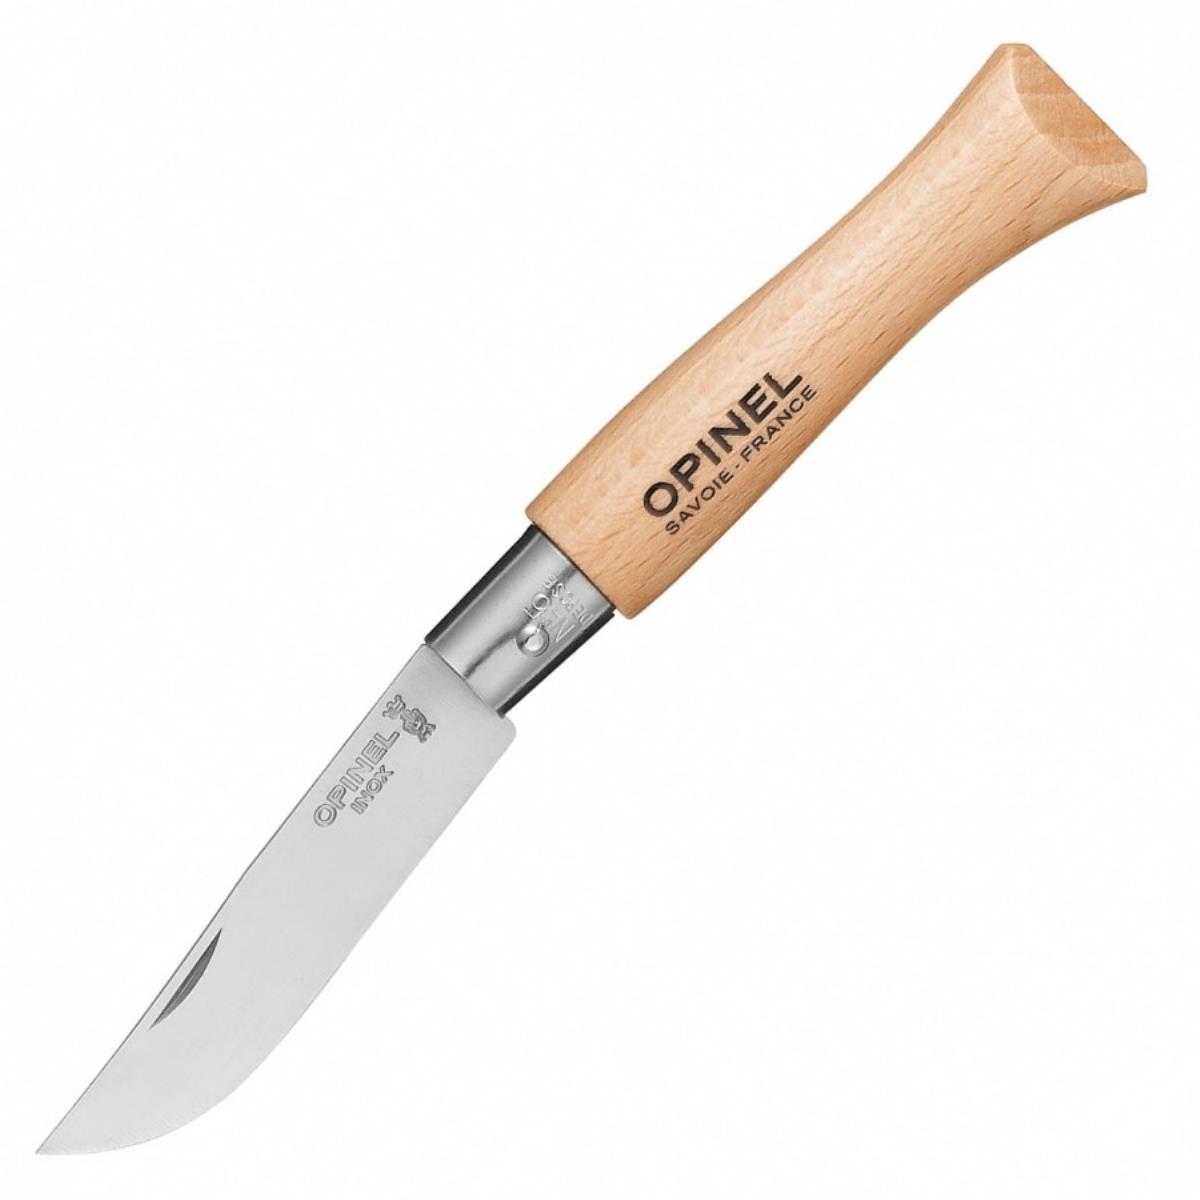 Нож №5 VRI Tradition Inox (нержавеющая сталь, рукоять бук, длина клинка 6 см) 0010729 OPINEL складной нож boker sherman damast сталь дамаск рукоять микарта